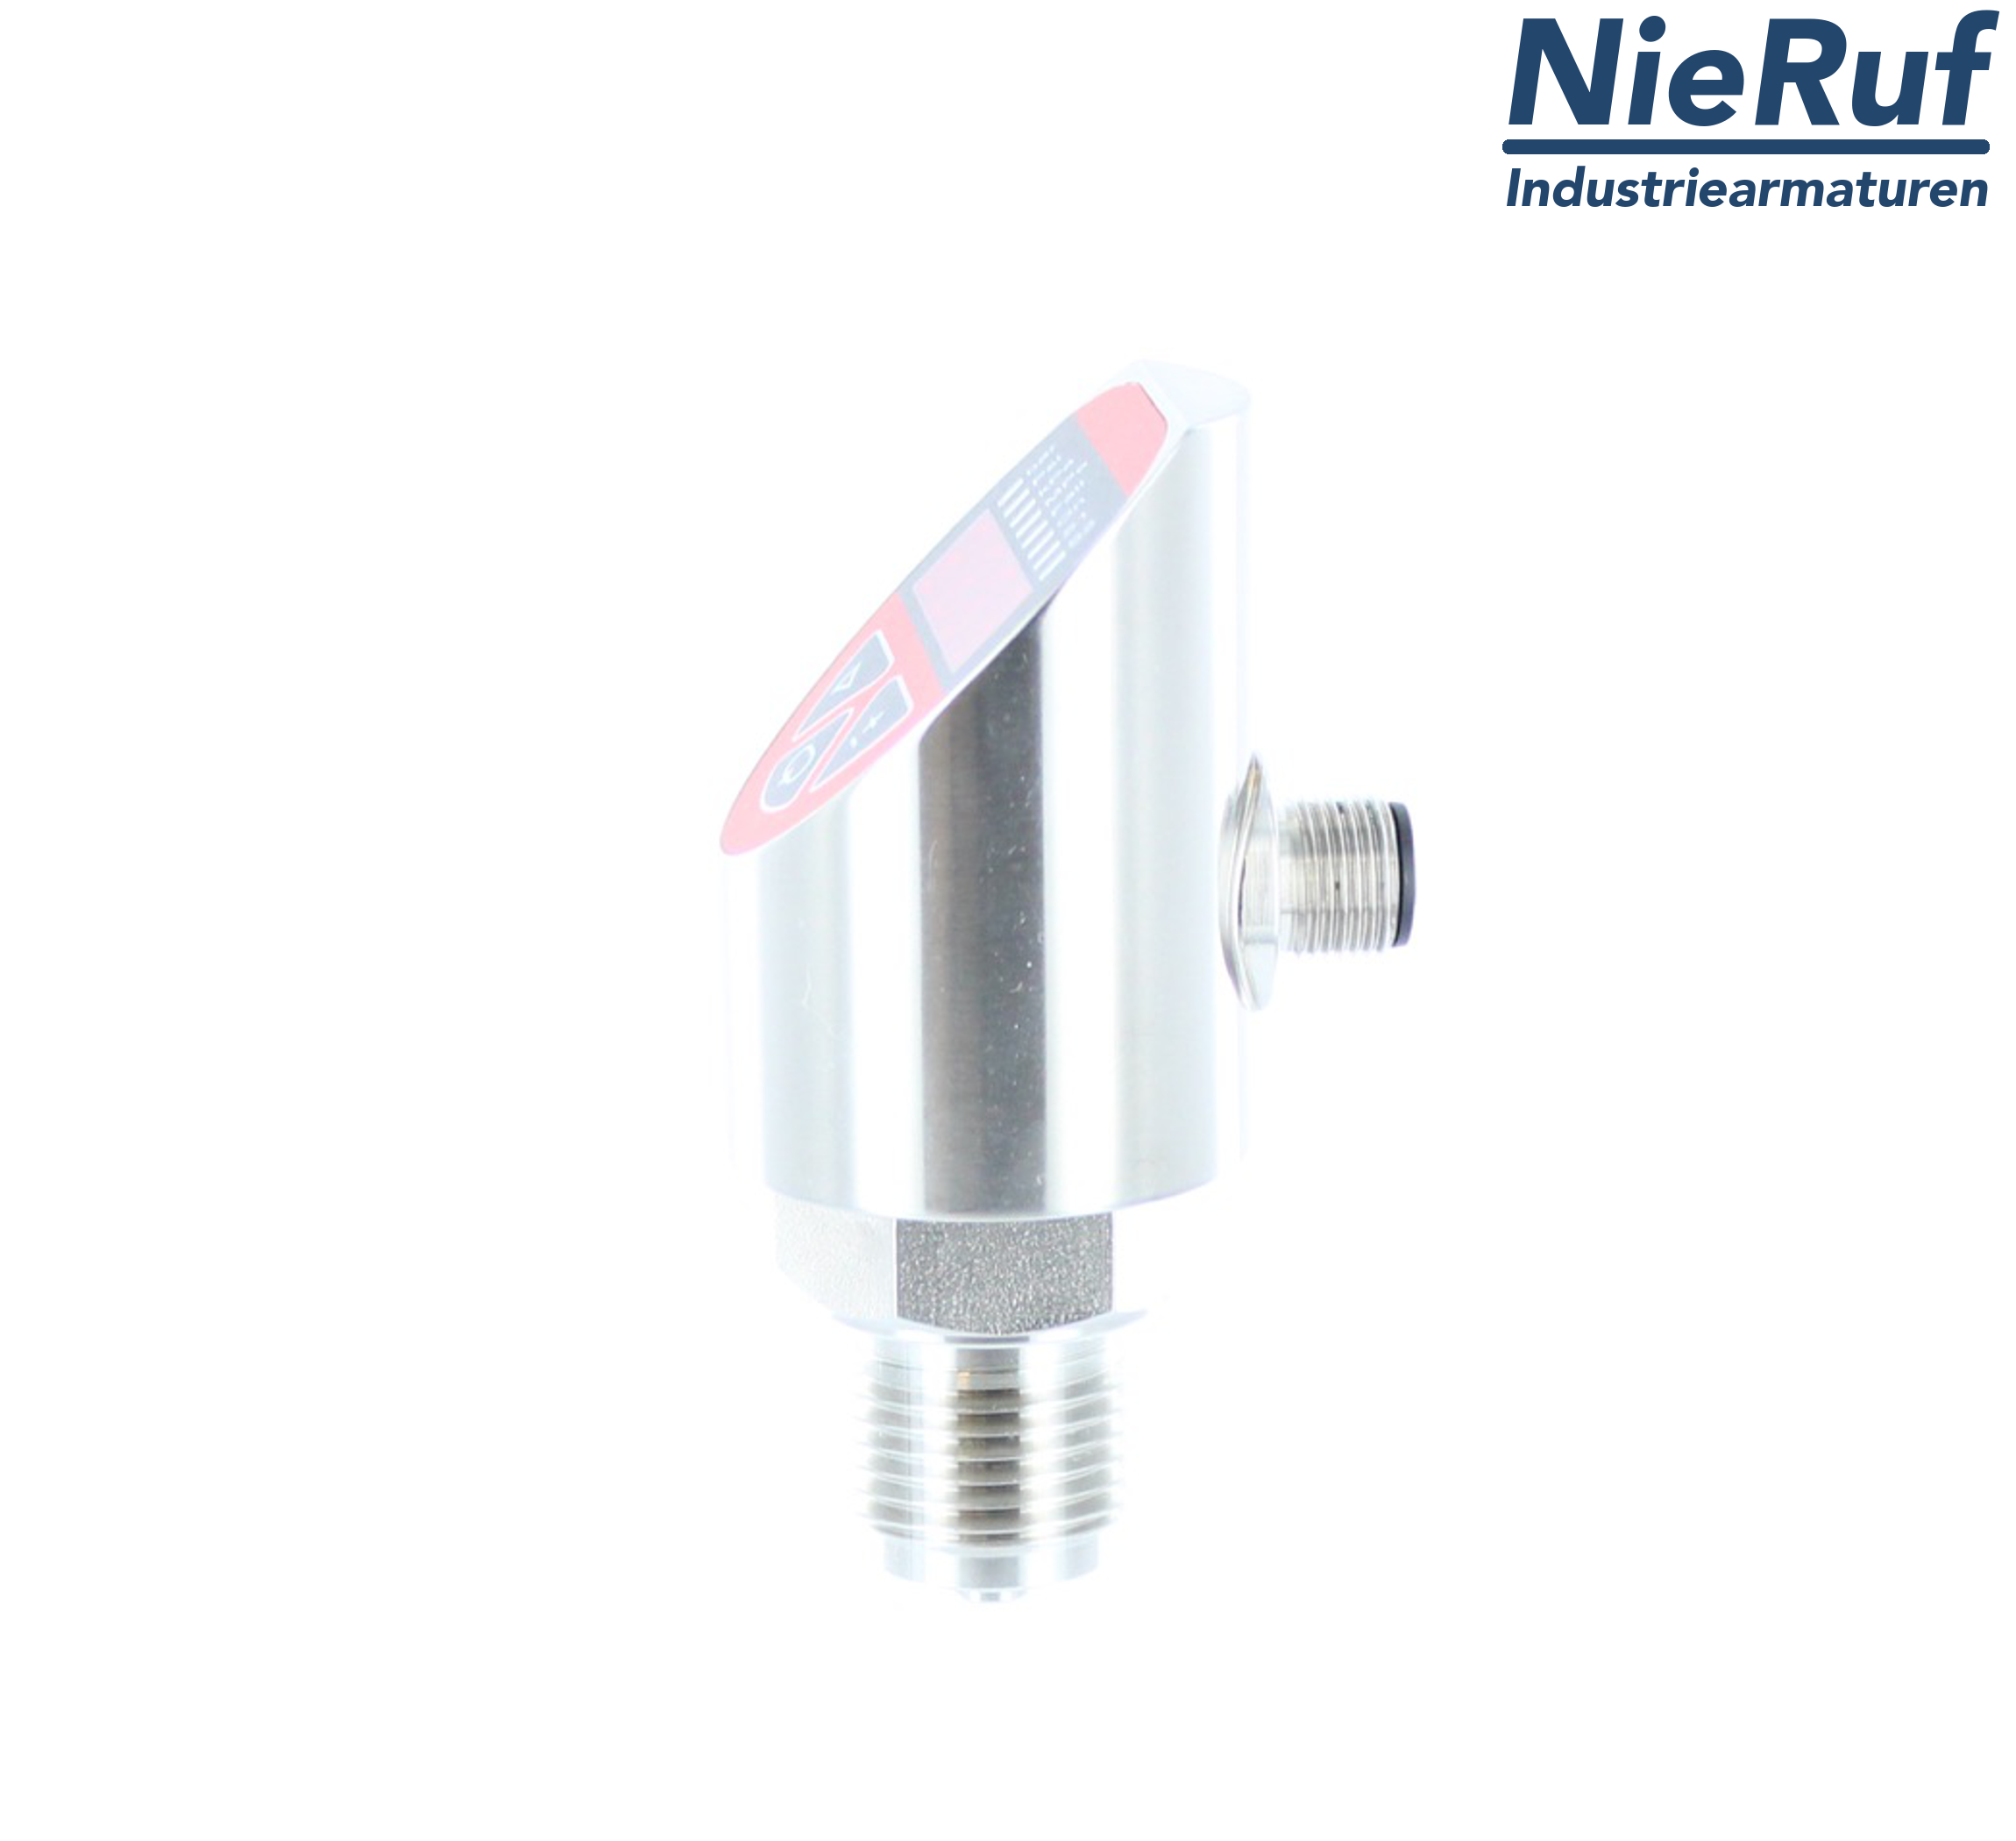 digital pressure sensor G 1/4" B 5-wire: 2xPNP, 1x4 - 20mA FPM 0,0 - 4,0 bar